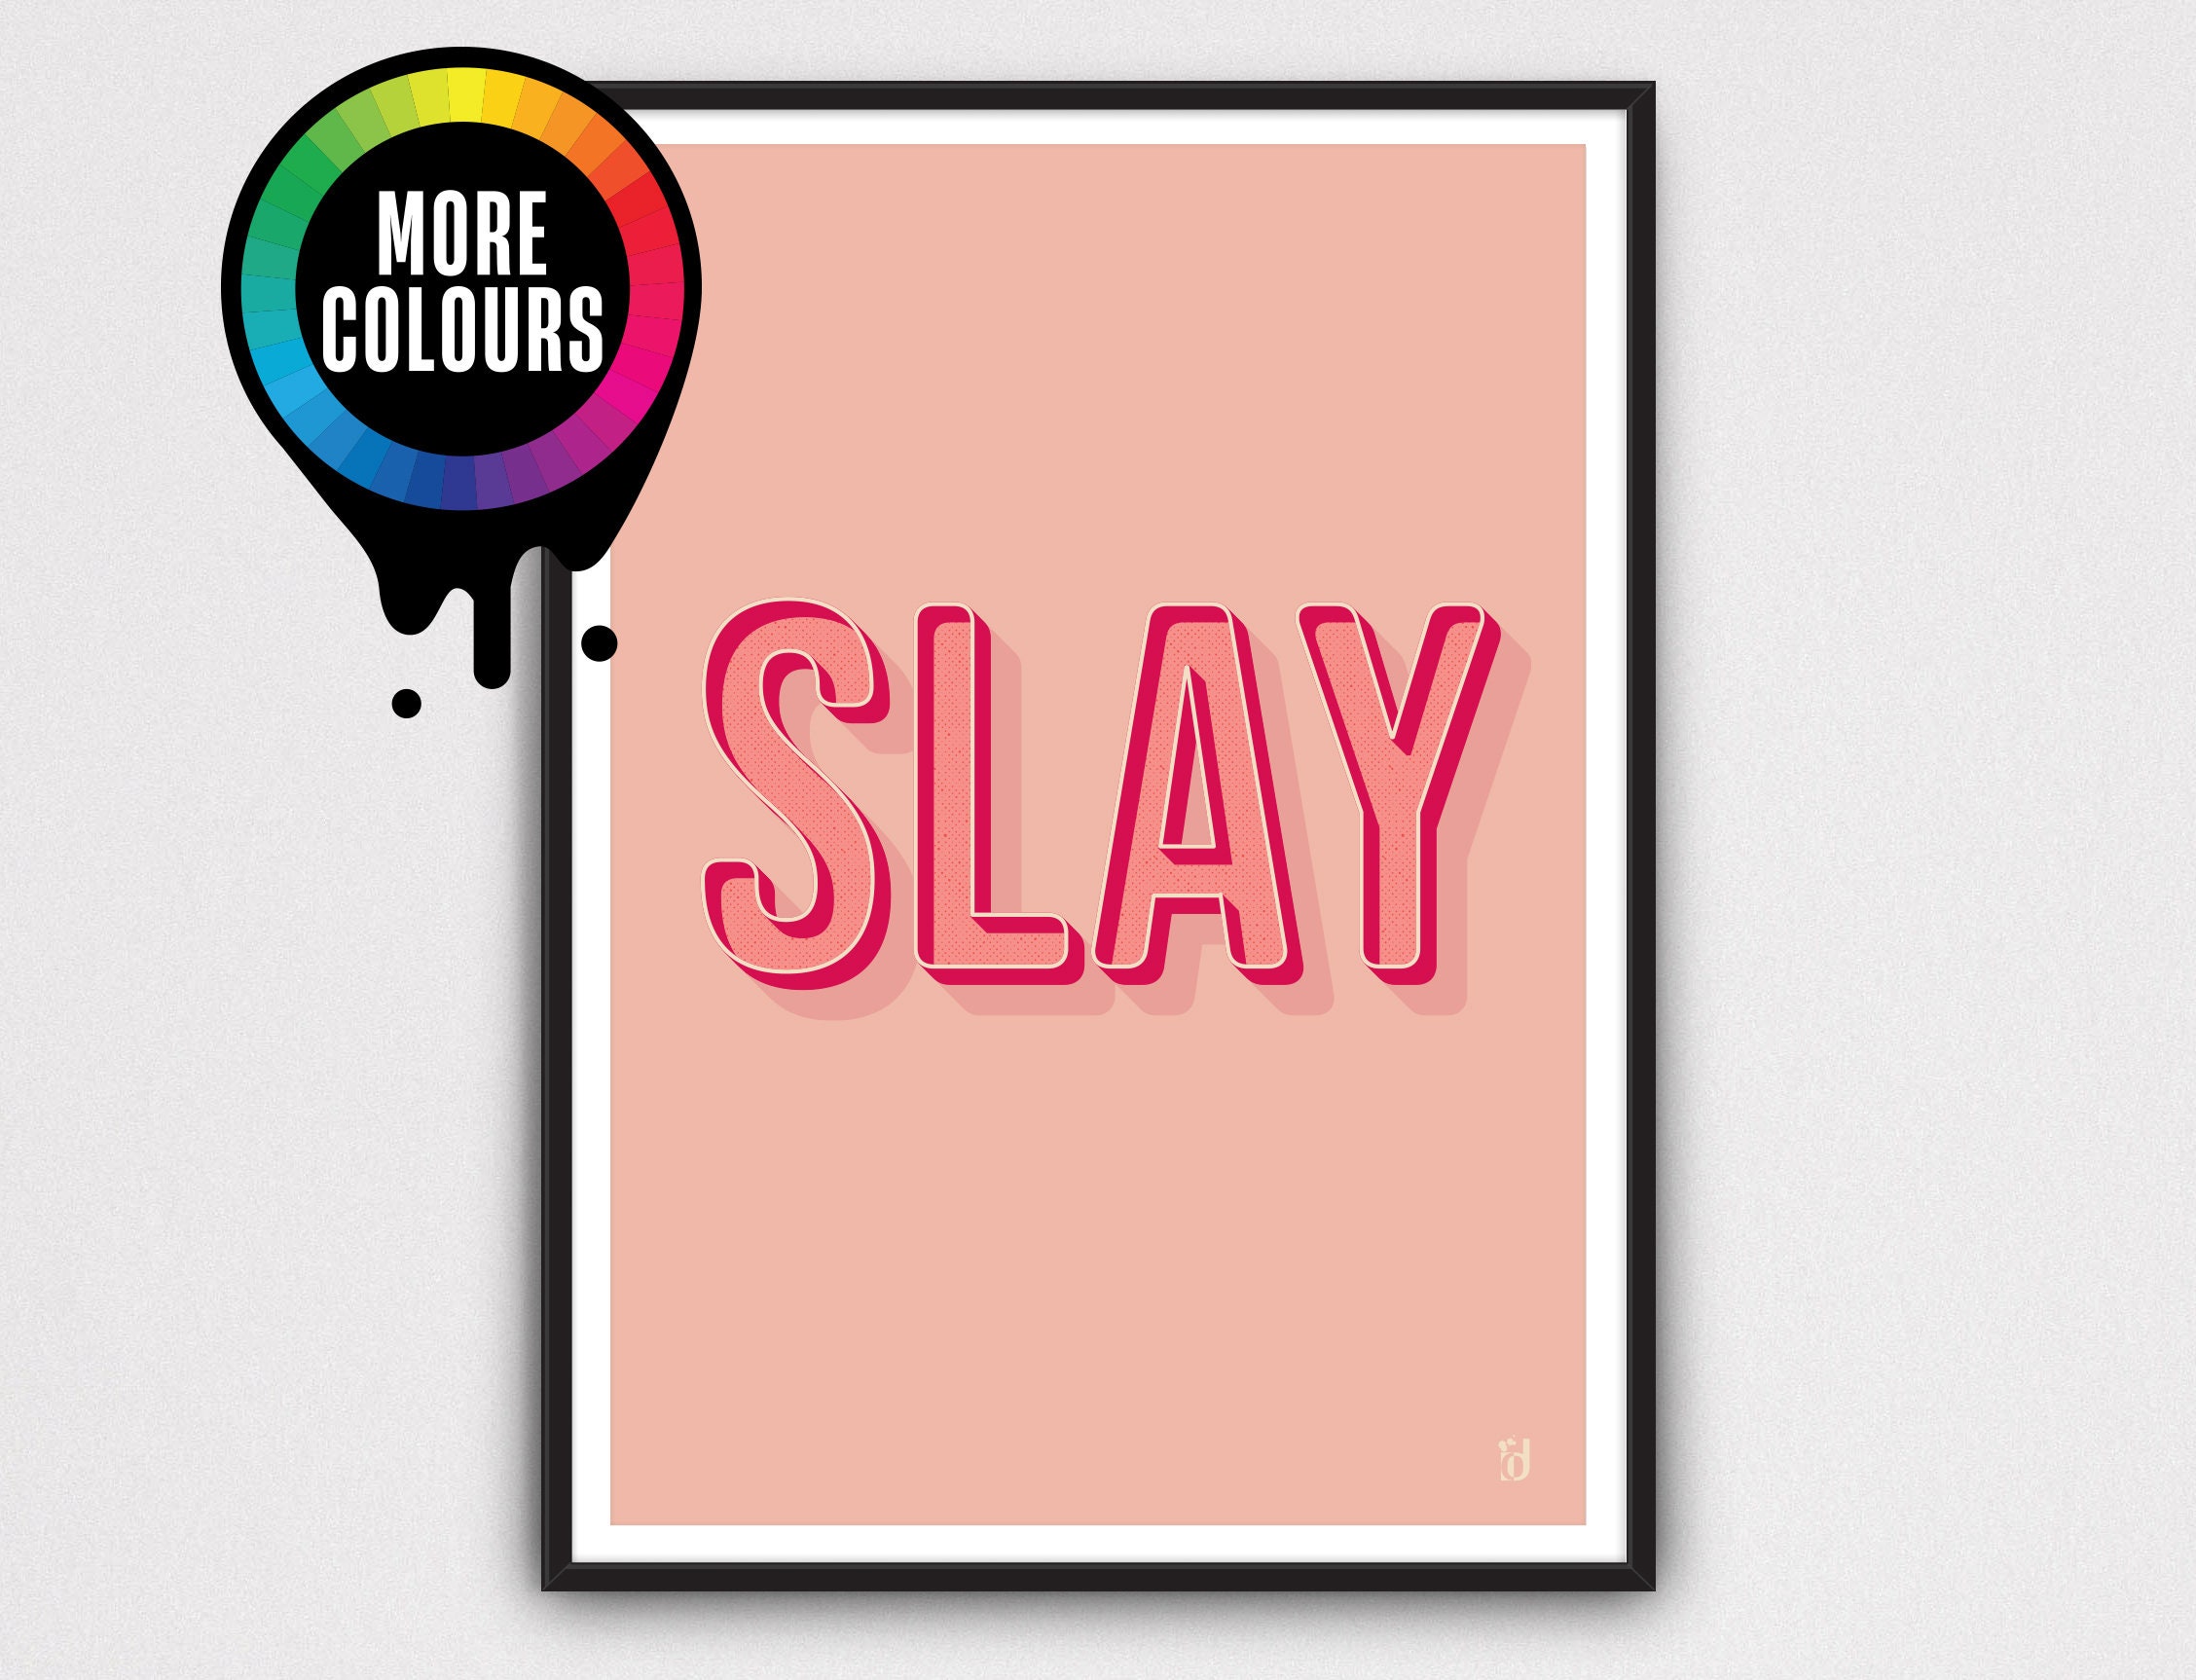 Slay All Day LED Schild für Zuhause, Hochzeiten, besondere Anlässe